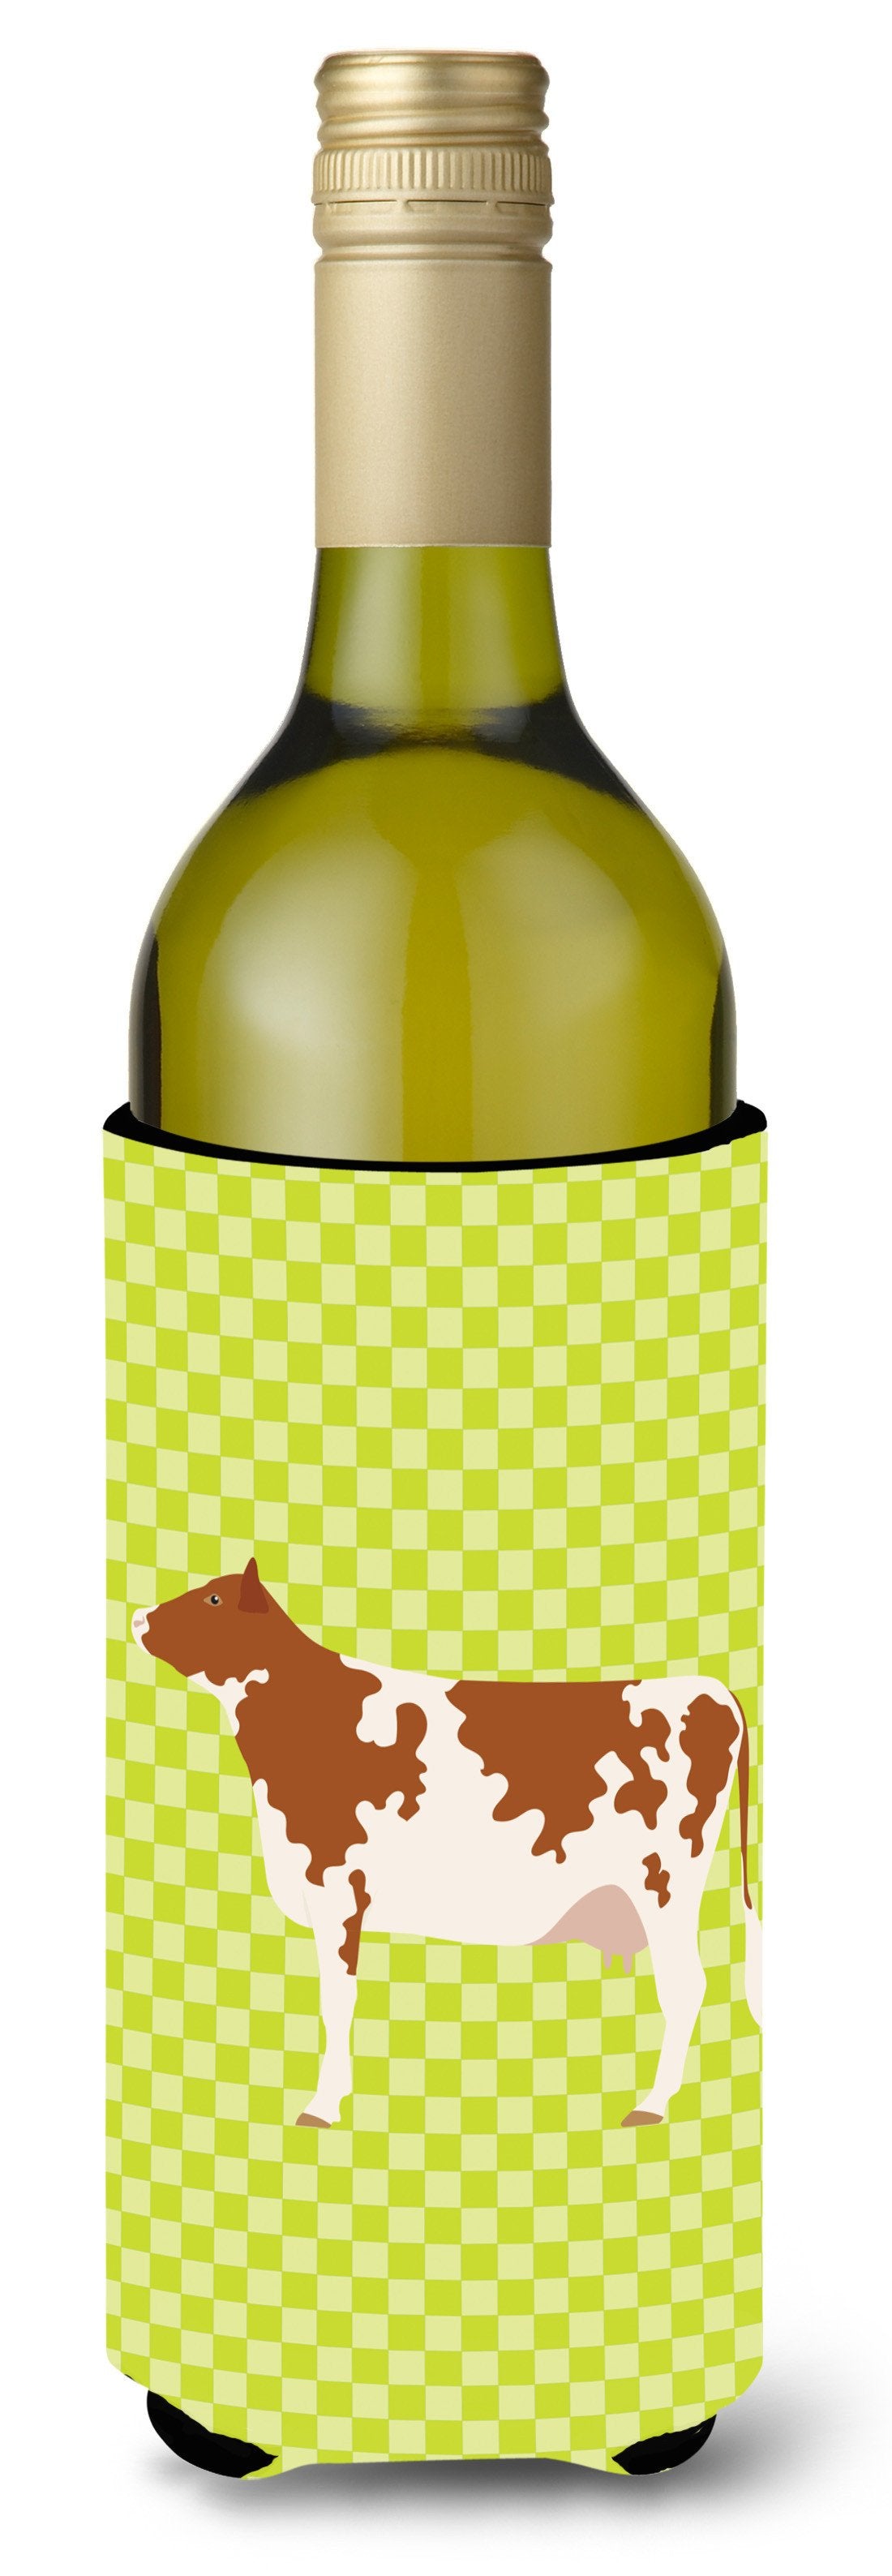 Ayrshire Cow Green Wine Bottle Beverge Insulator Hugger BB7653LITERK by Caroline's Treasures